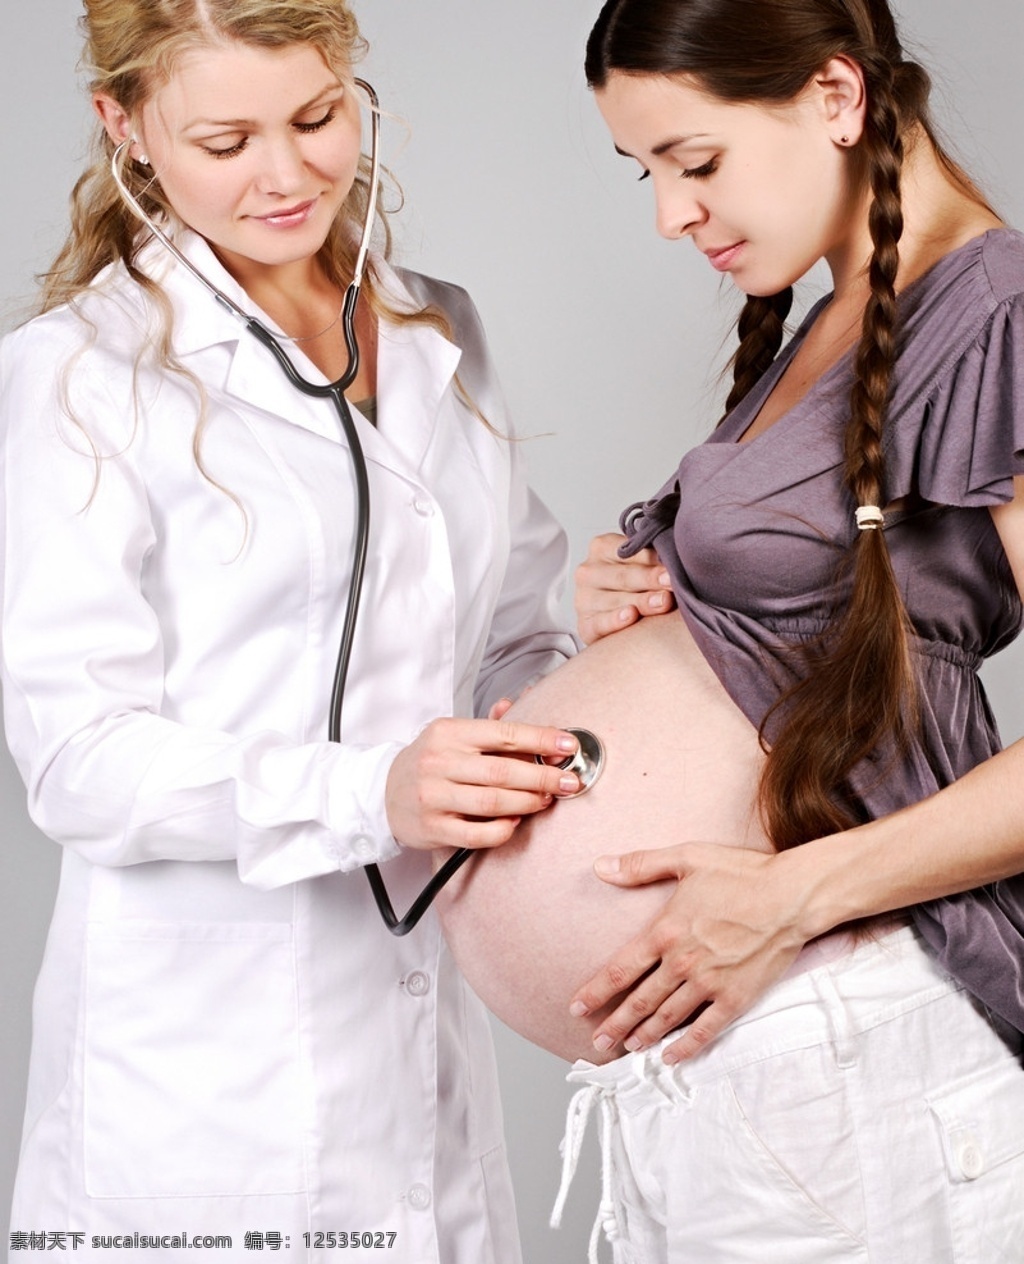 怀孕的妈妈 孕妇 大肚子 静态美赏析 人物摄影 人物图库